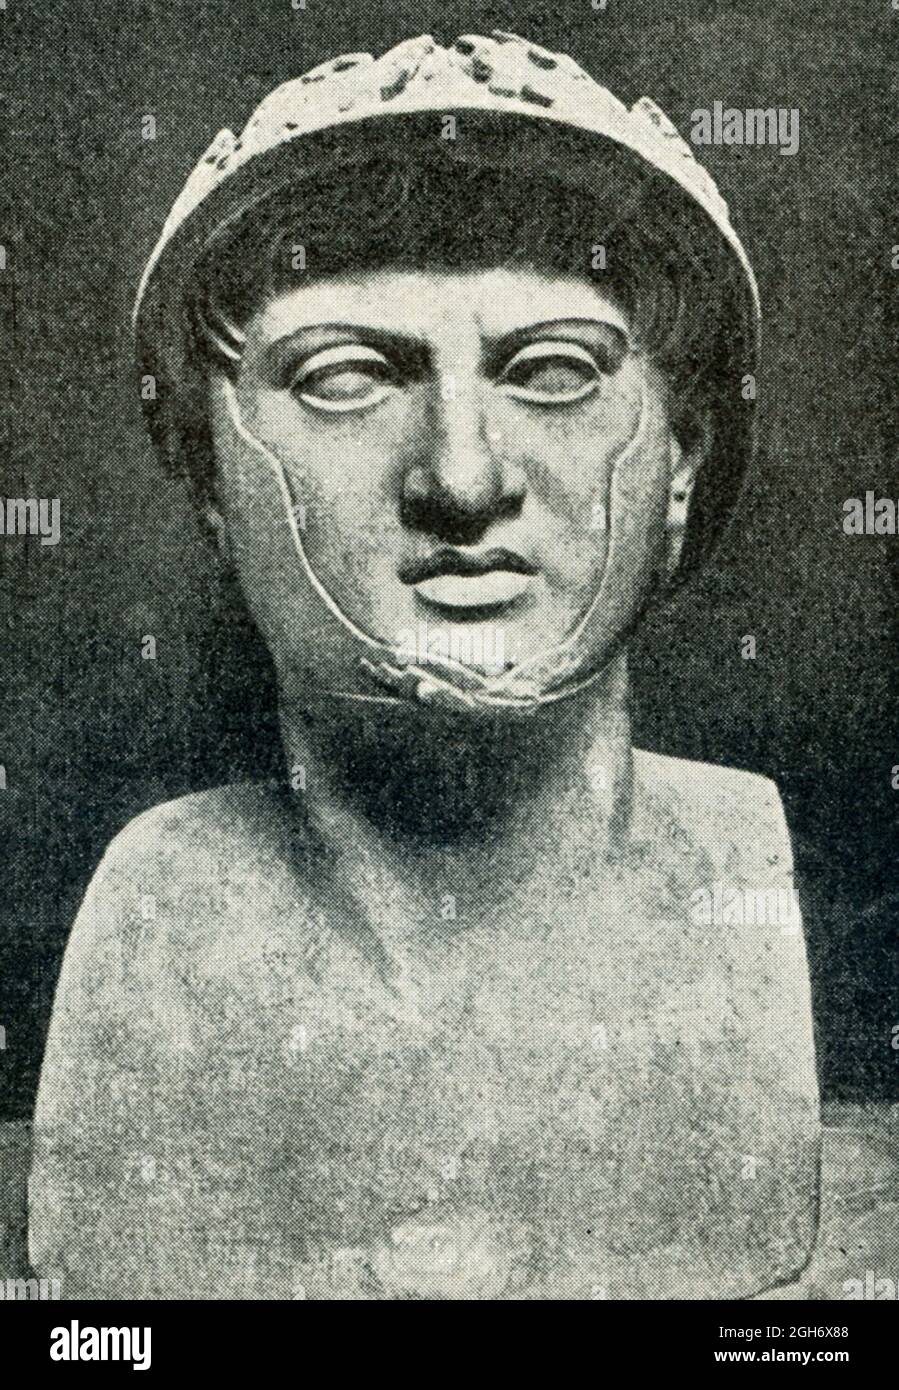 Questa foto del 1910 mostra il busto di Pirro che si trova nel museo di Napoli. Pyrrrrhus è meglio conosciuta per la battaglia di Eraclea nel 280 a.C. la battaglia fu combattuta tra i Romani e i Greci. I Greci erano guidati da Pyrrrrrhus, il re di Epiro (una regione costiera che si trova tra la Grecia nord-occidentale e l'Albania meridionale). Mentre Pyrrrrhus ha vinto, entrambe le parti hanno perso migliaia nella battaglia e si dice che sia una delle sue prime vittorie Pirrhic. Heraclea era una città della Magna Graecia, all'interno dell'Italia. Foto Stock